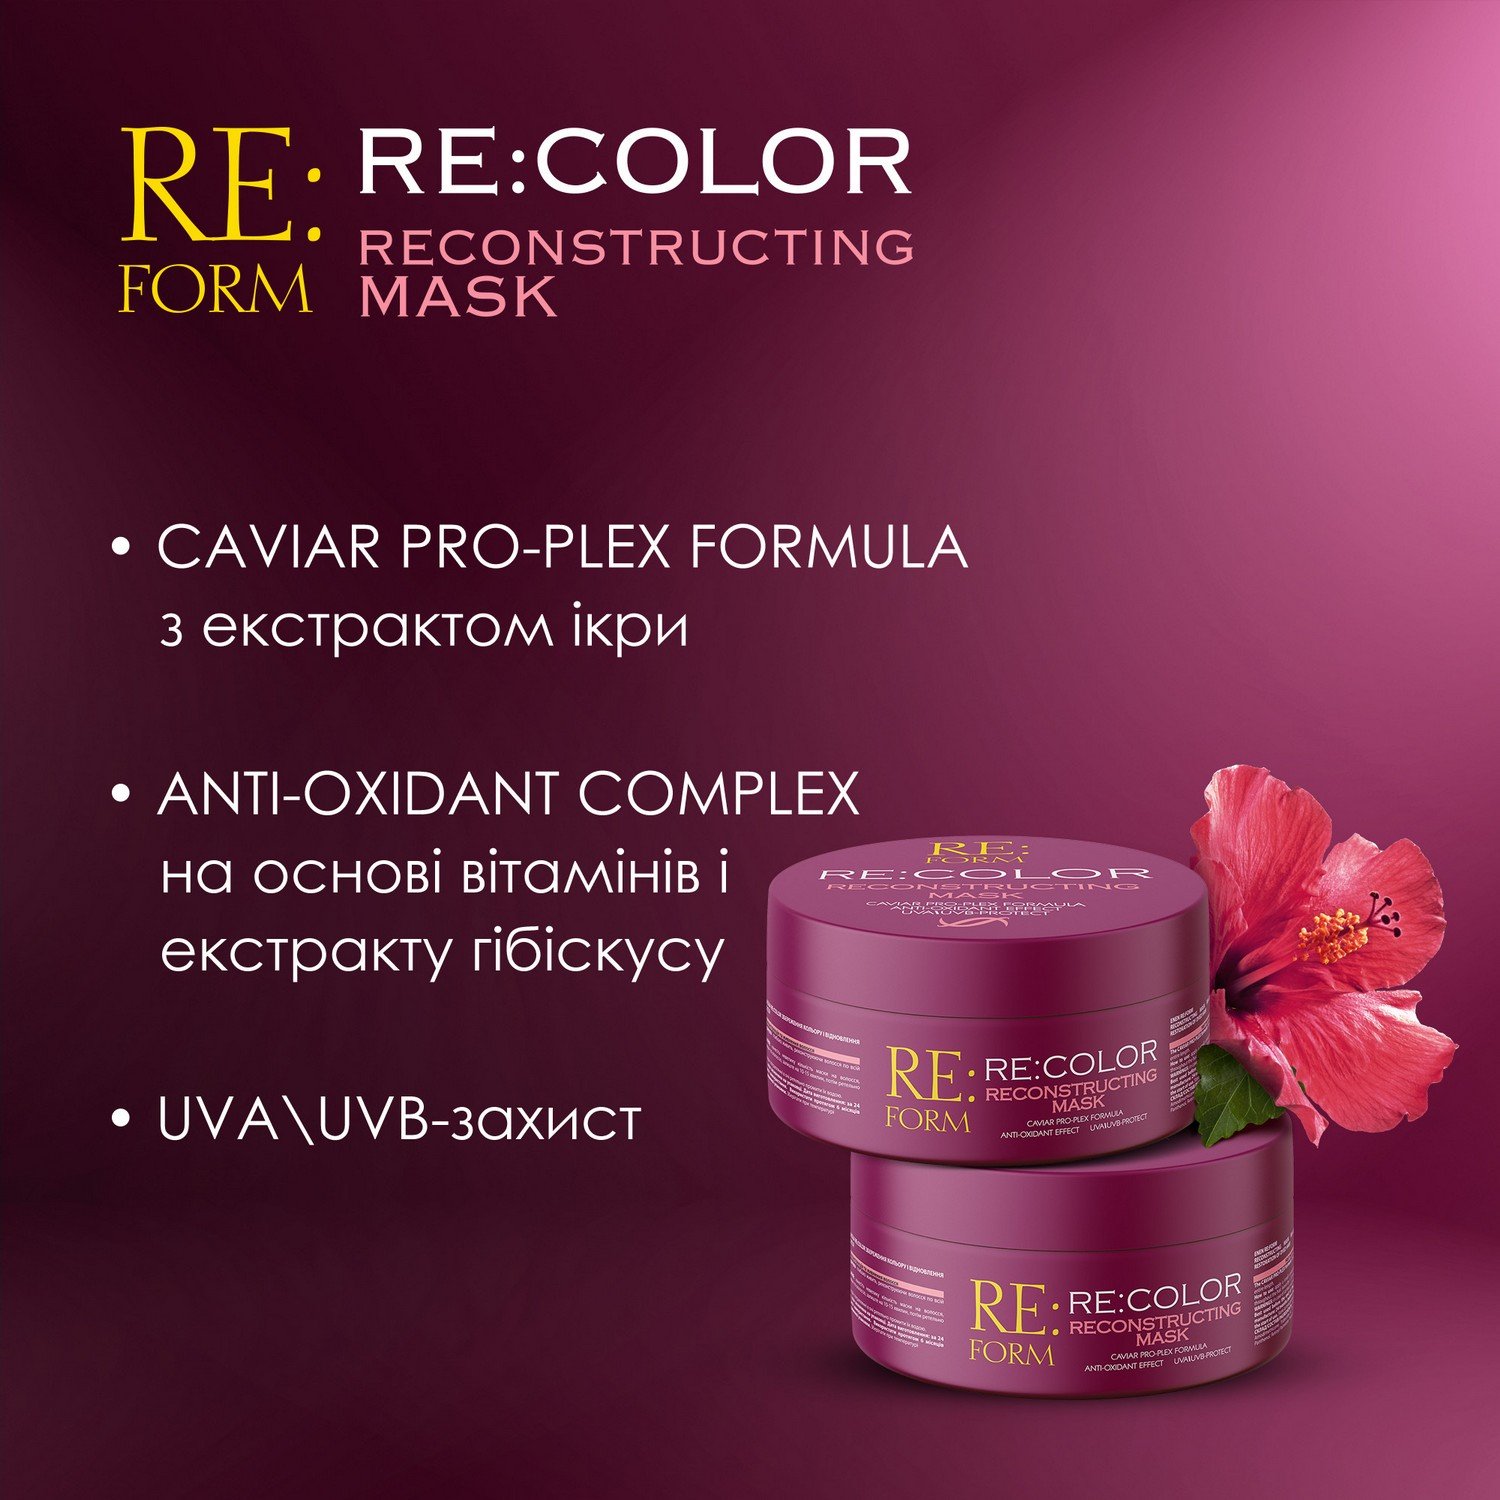 Реконструирующая маска Re:form Re:color Сохранение цвета и восстановление окрашенных волос, 230 мл - фото 5